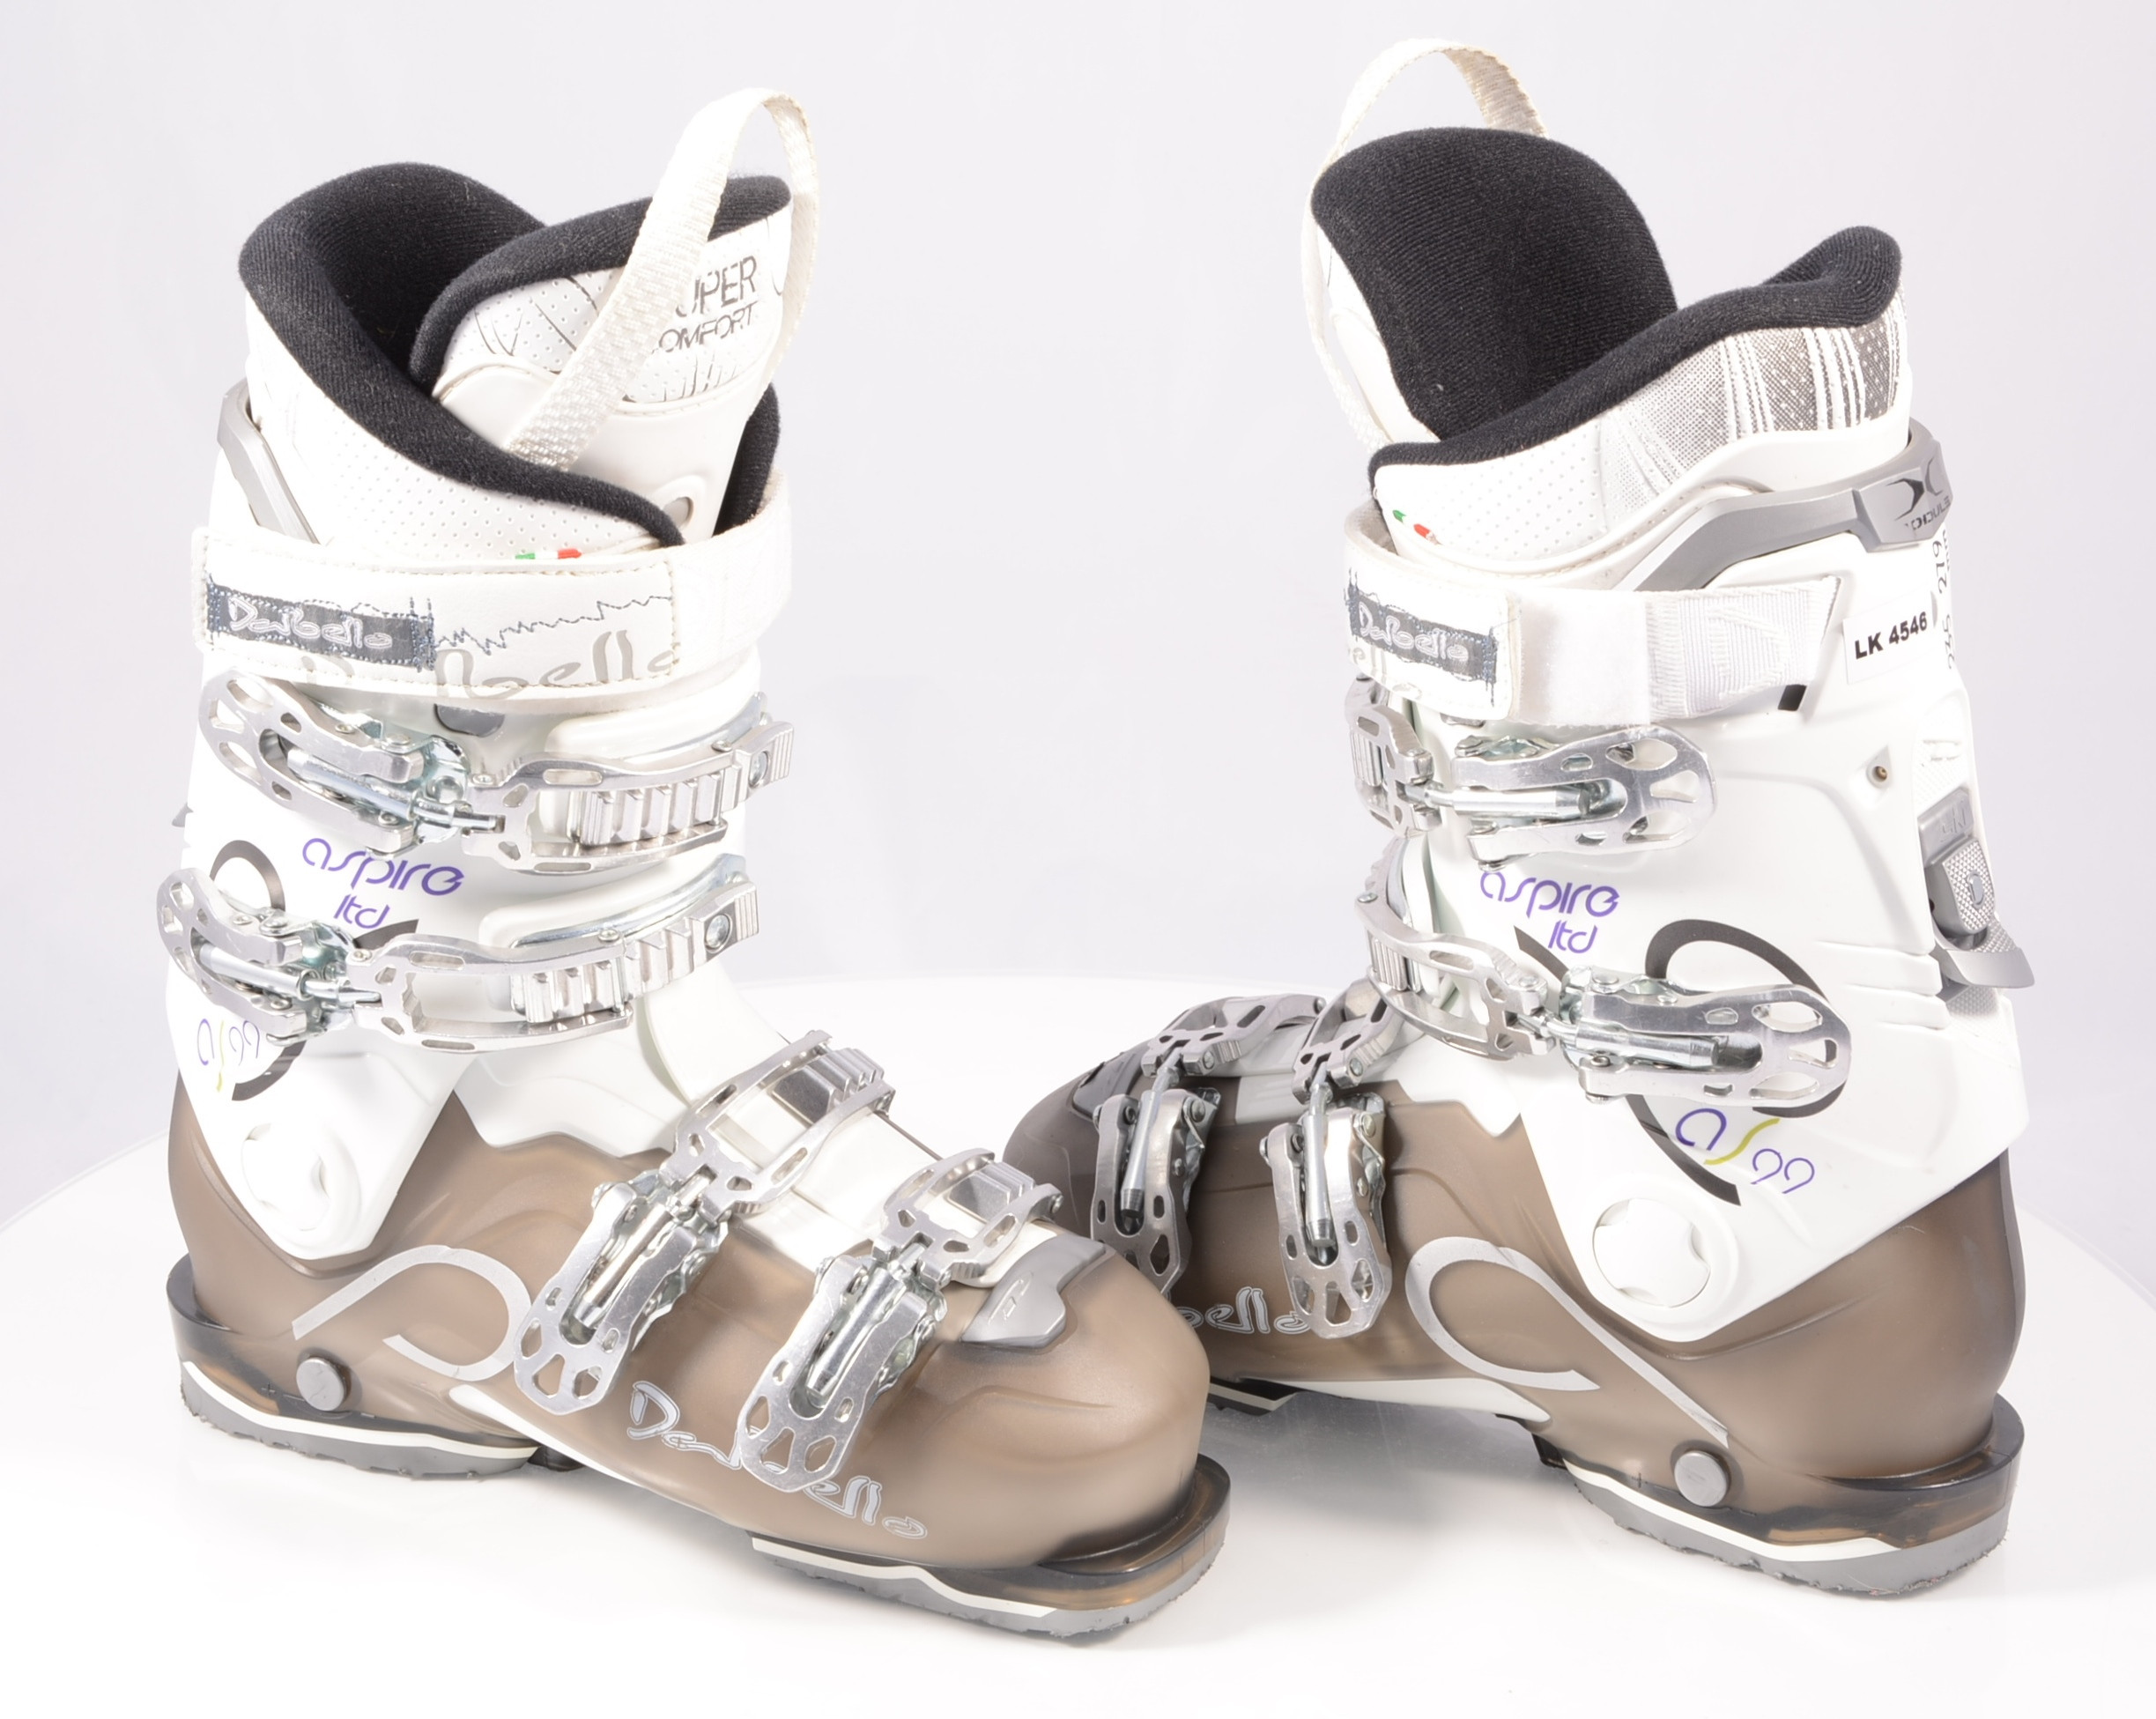 botas esquí mujer DALBELLO ASPIRE 99 LTD, super comfort, SKI/WALK, X-module, white/grey, ( usados UNA ) - Mardosport.es